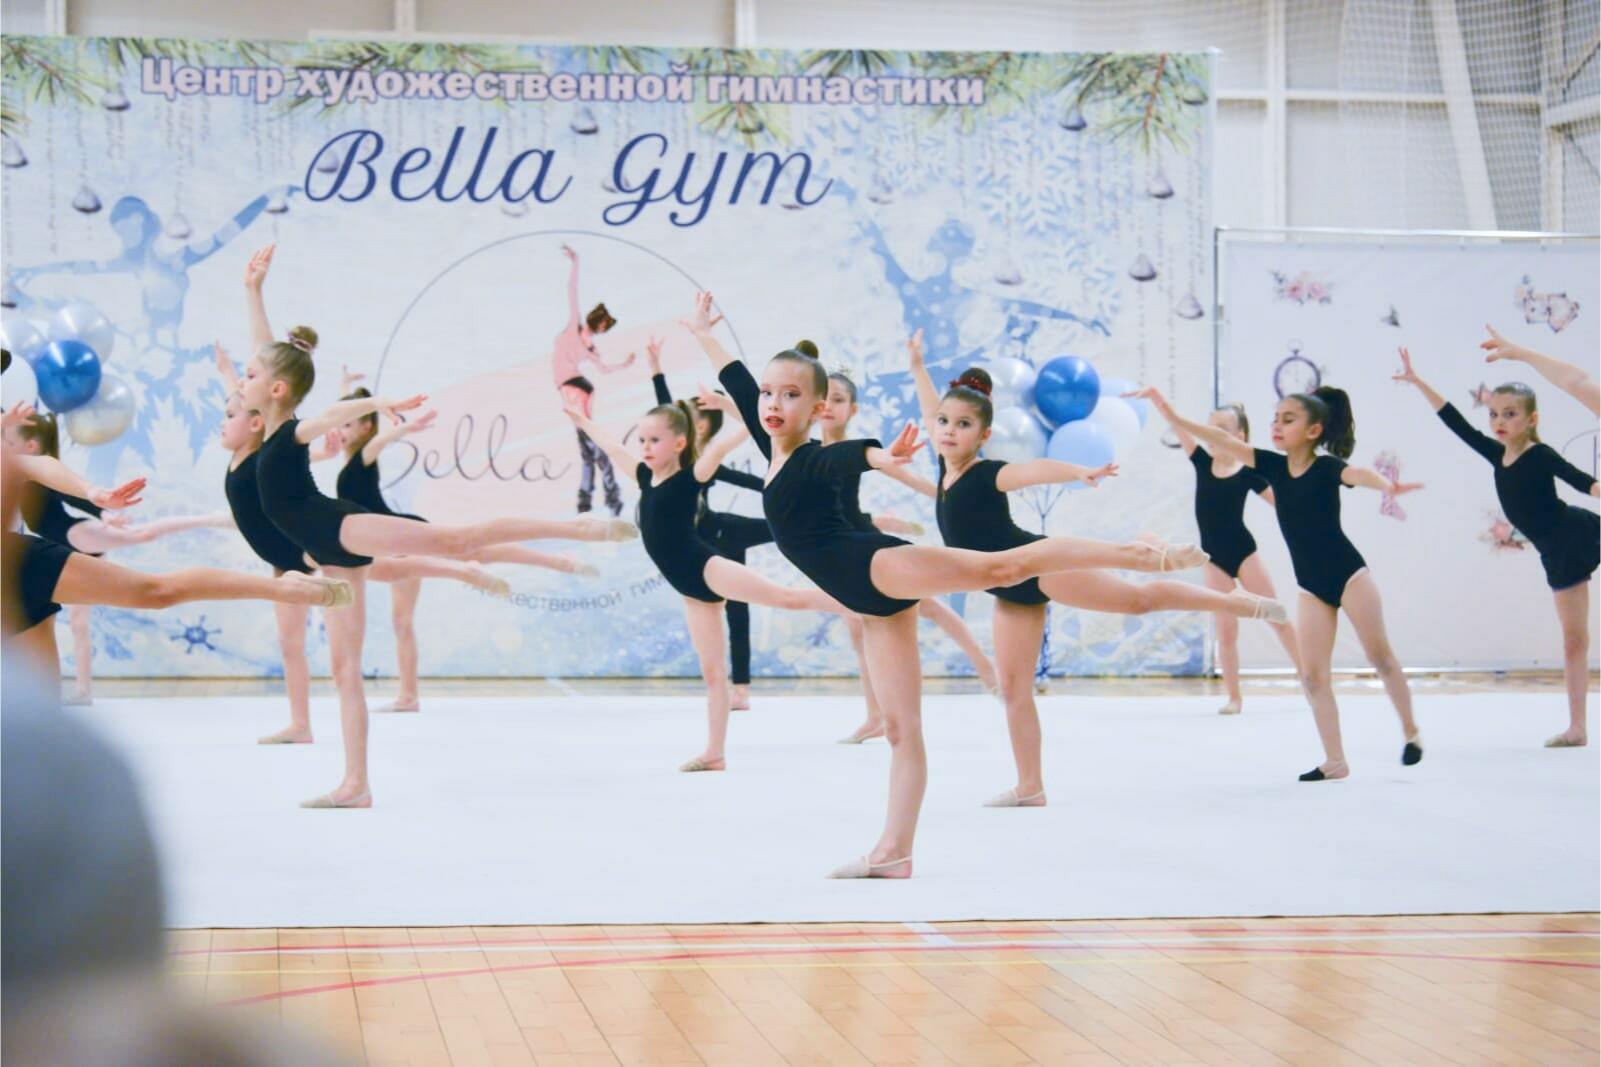 Bella Gym | Центр художественной гимнастики